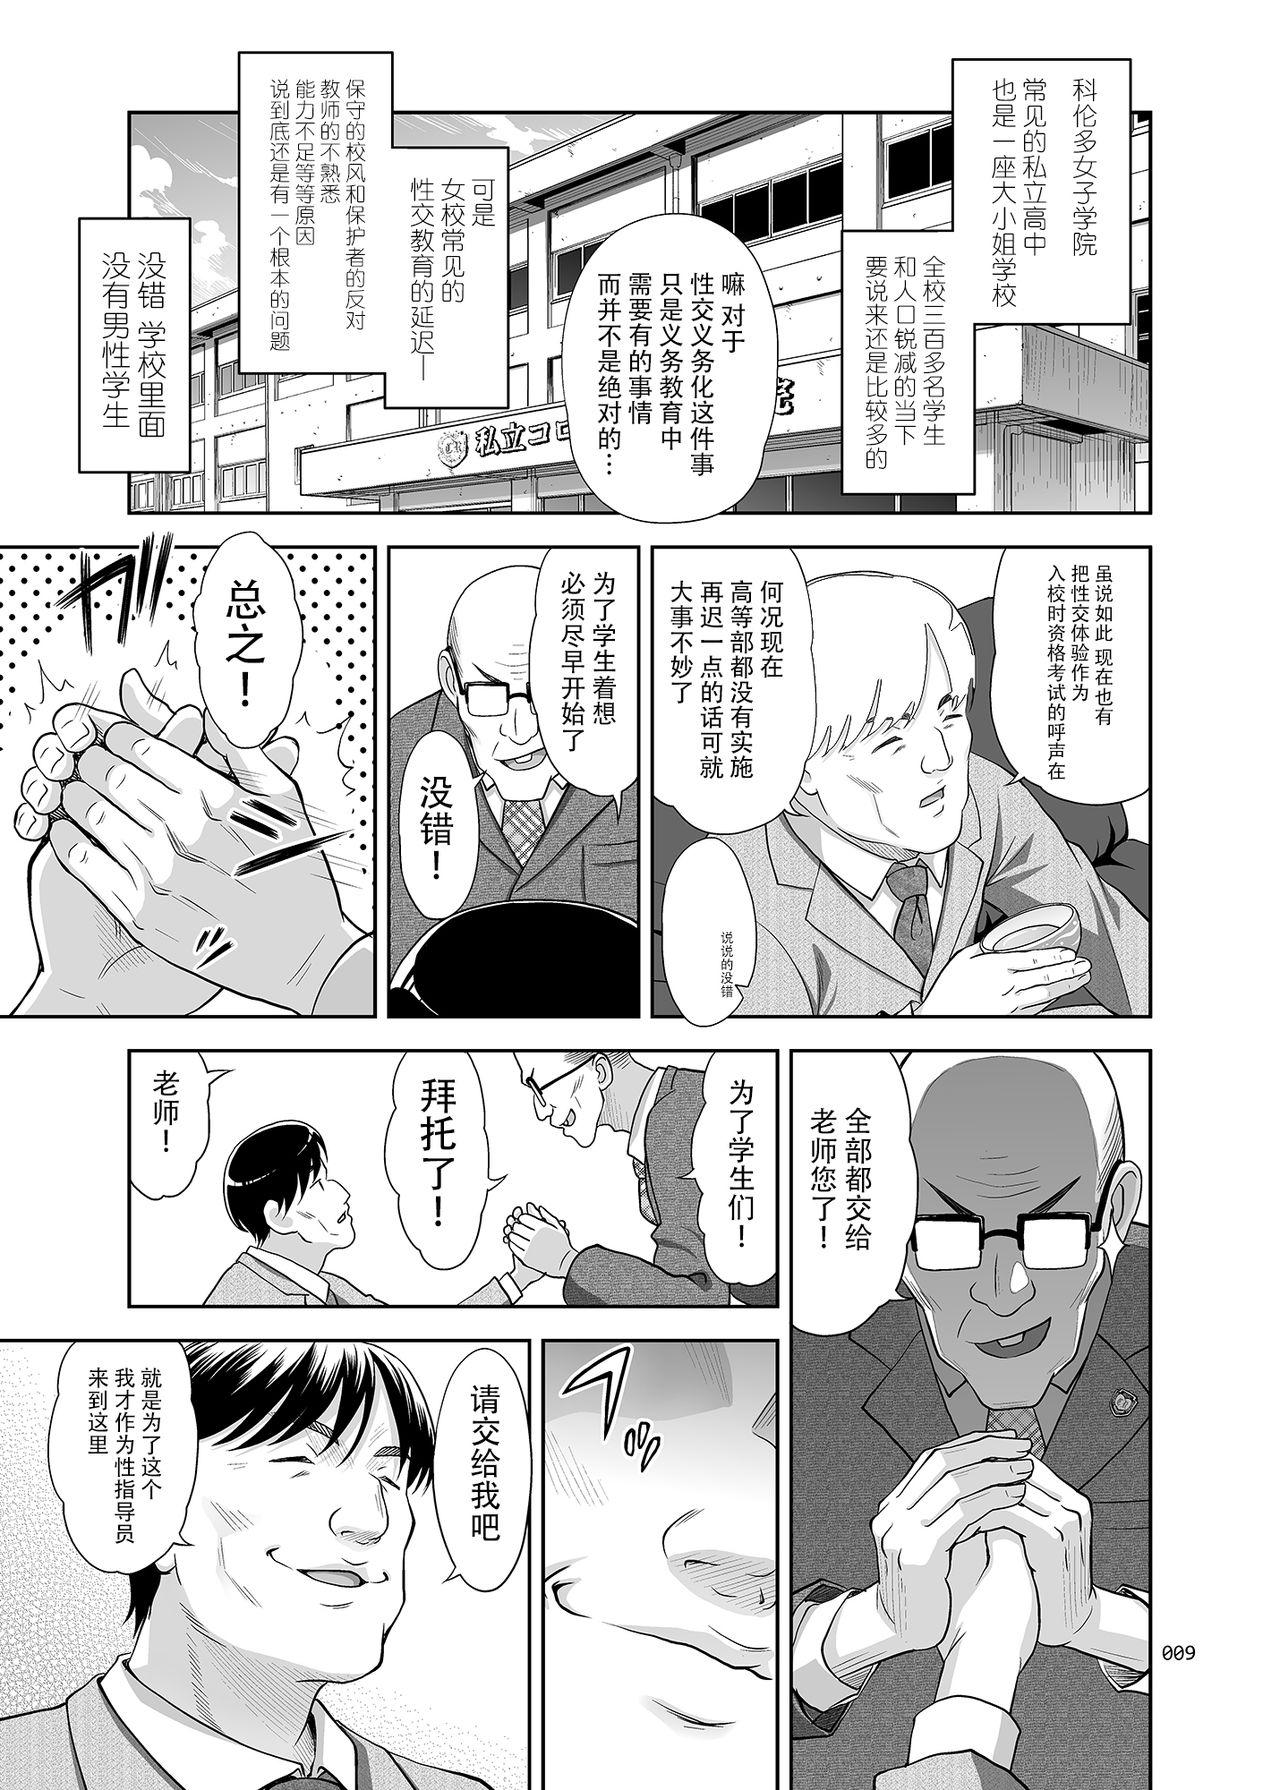 Pauzudo Seishidouin no Oshigoto - Original Softcore - Page 8